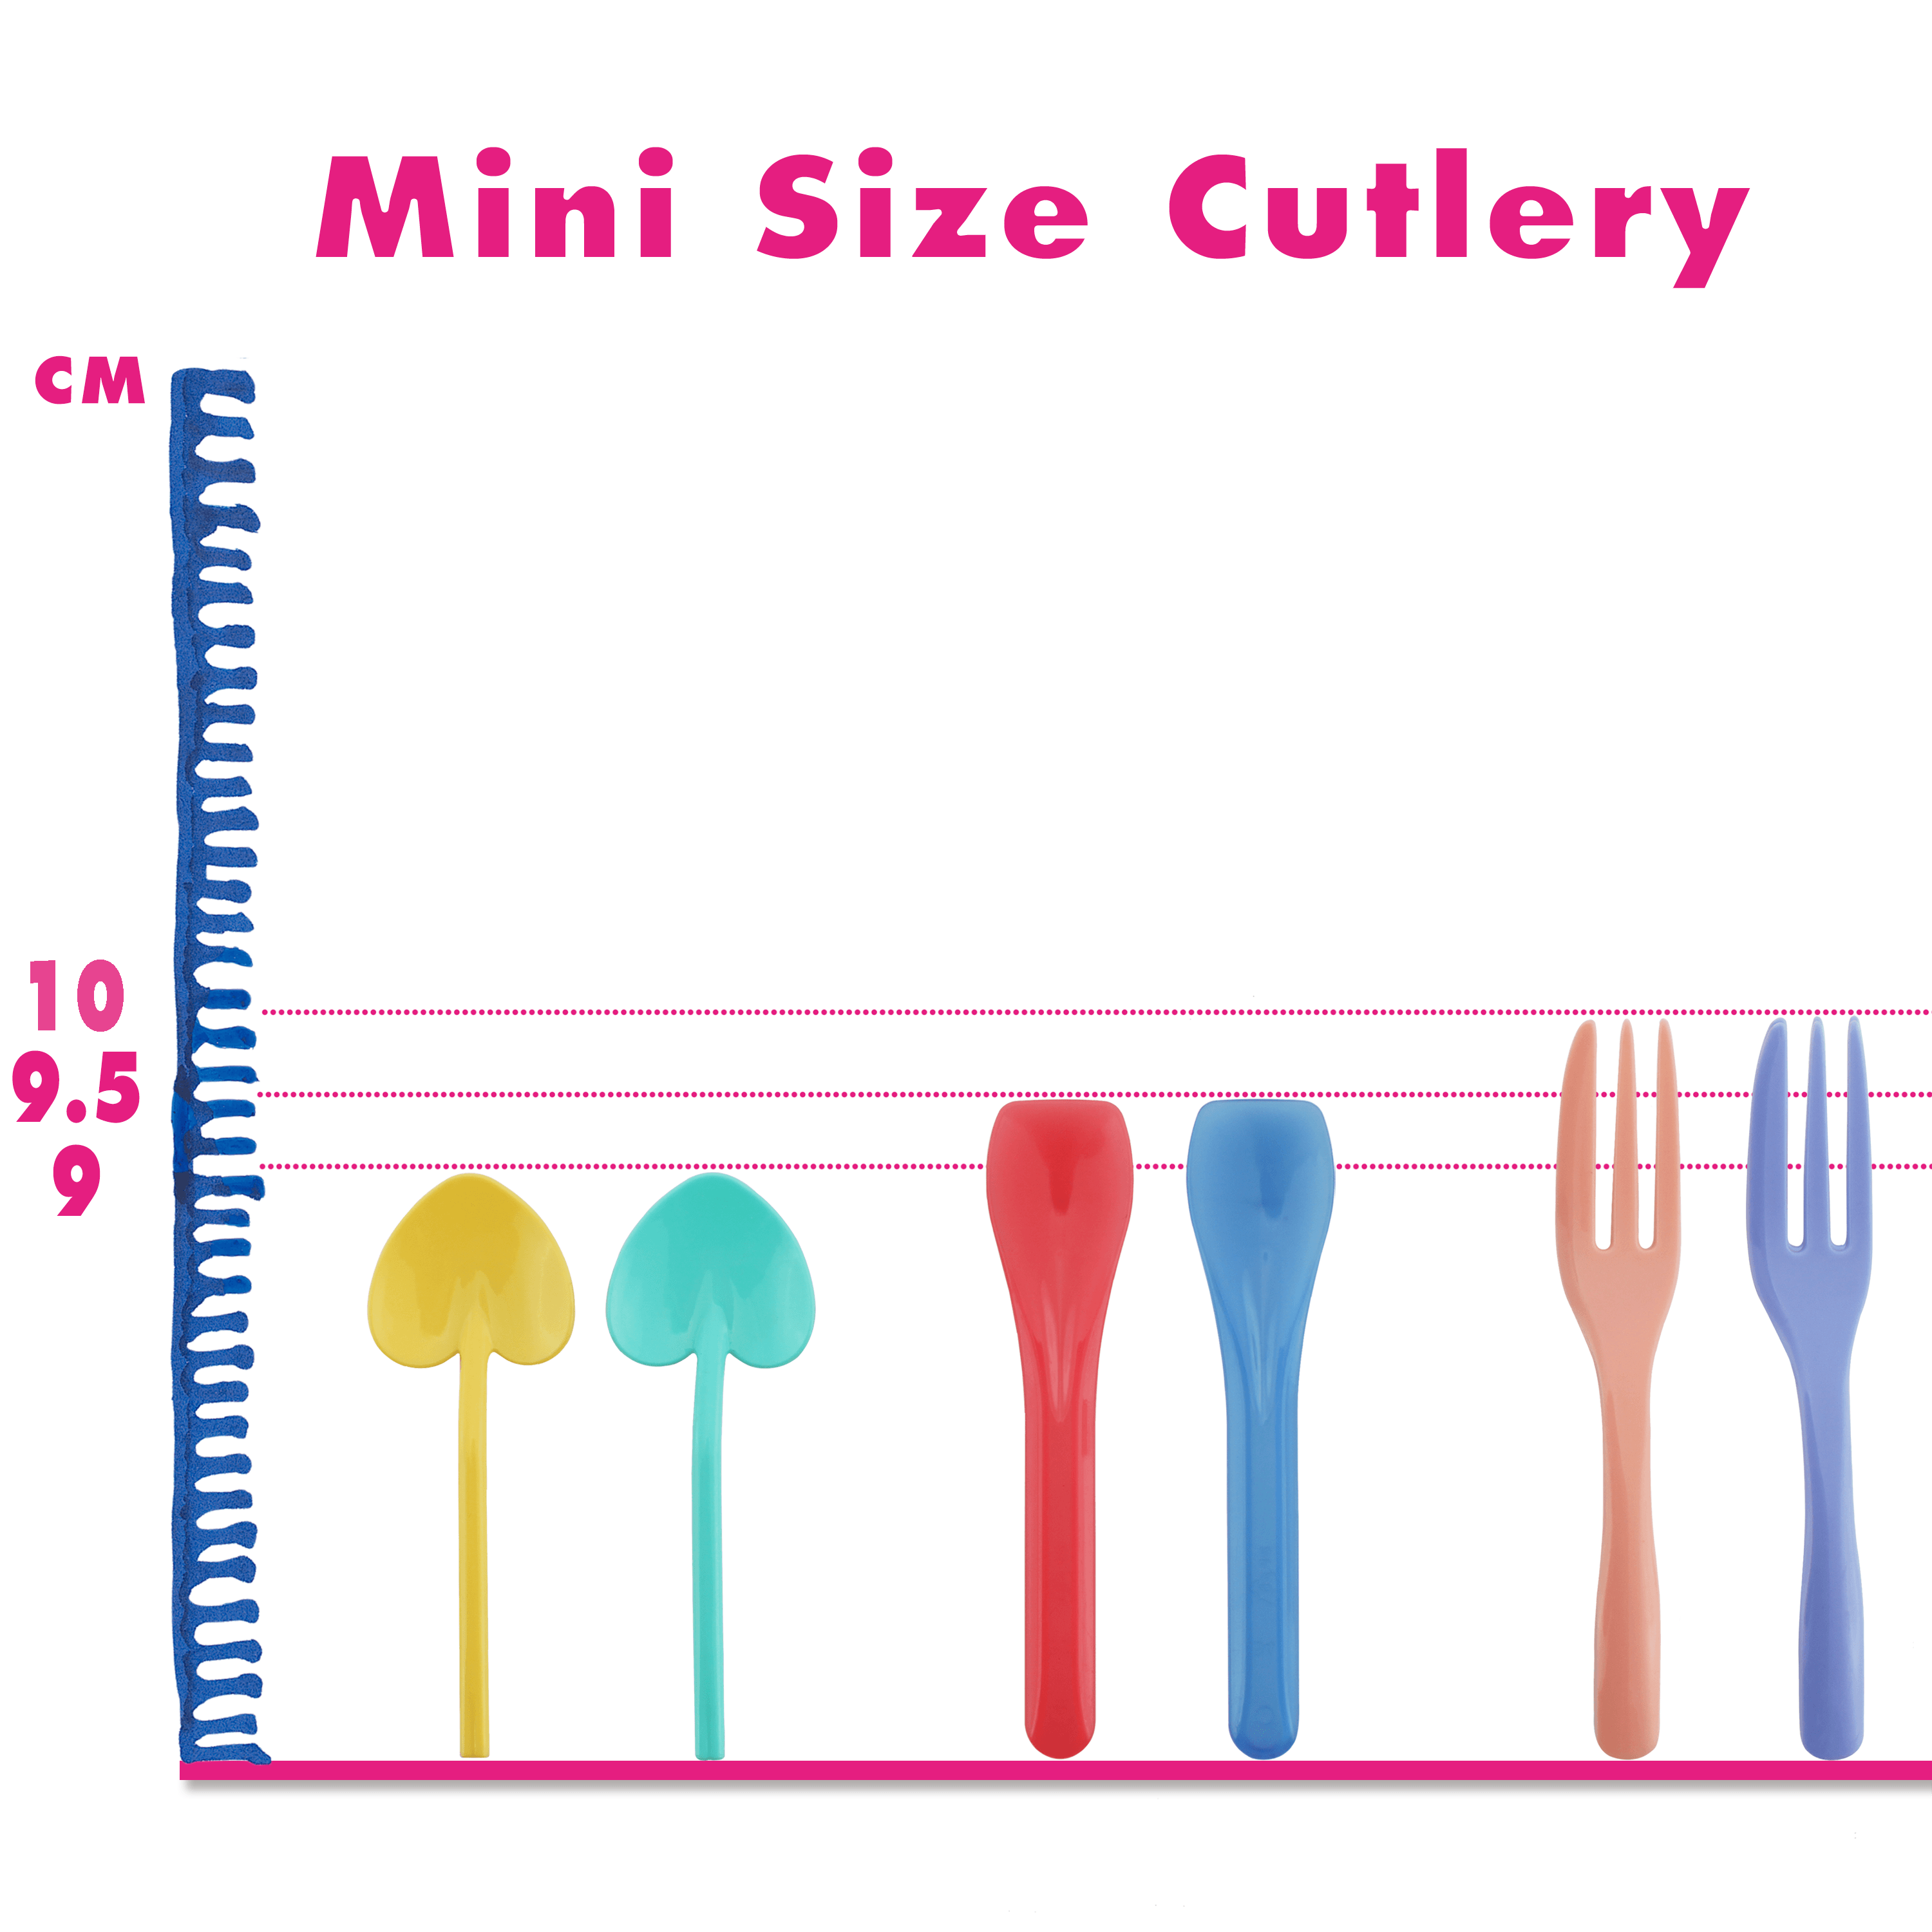 7-10cm Mini Plastic Cutlery